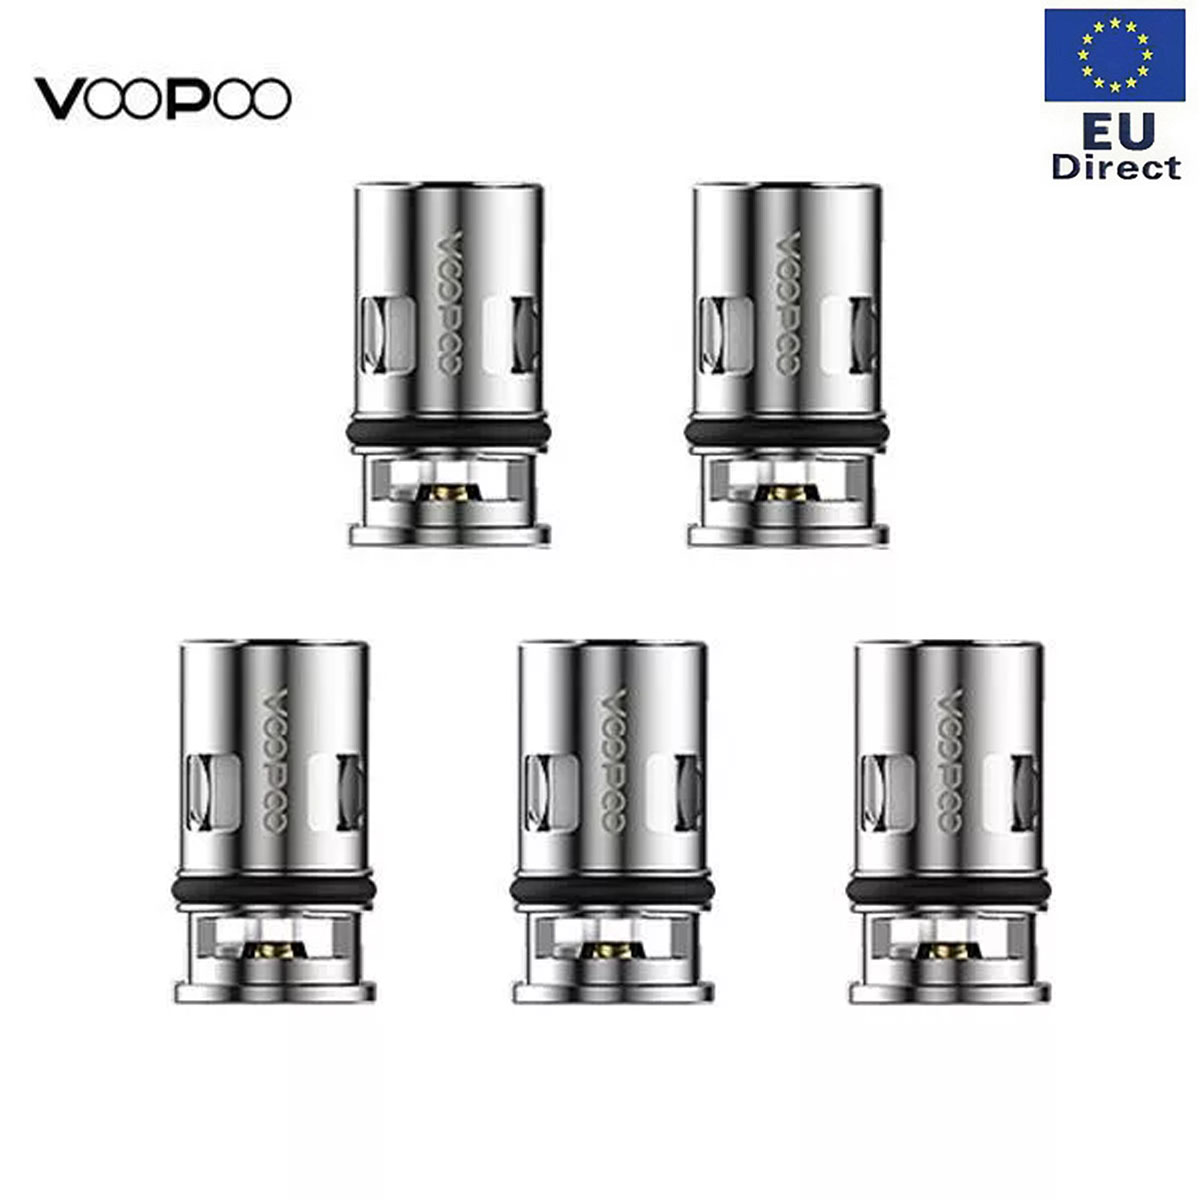 [EU]Authentic VOOPOO PnP-VM6 coil Head 0.15ohm x 5